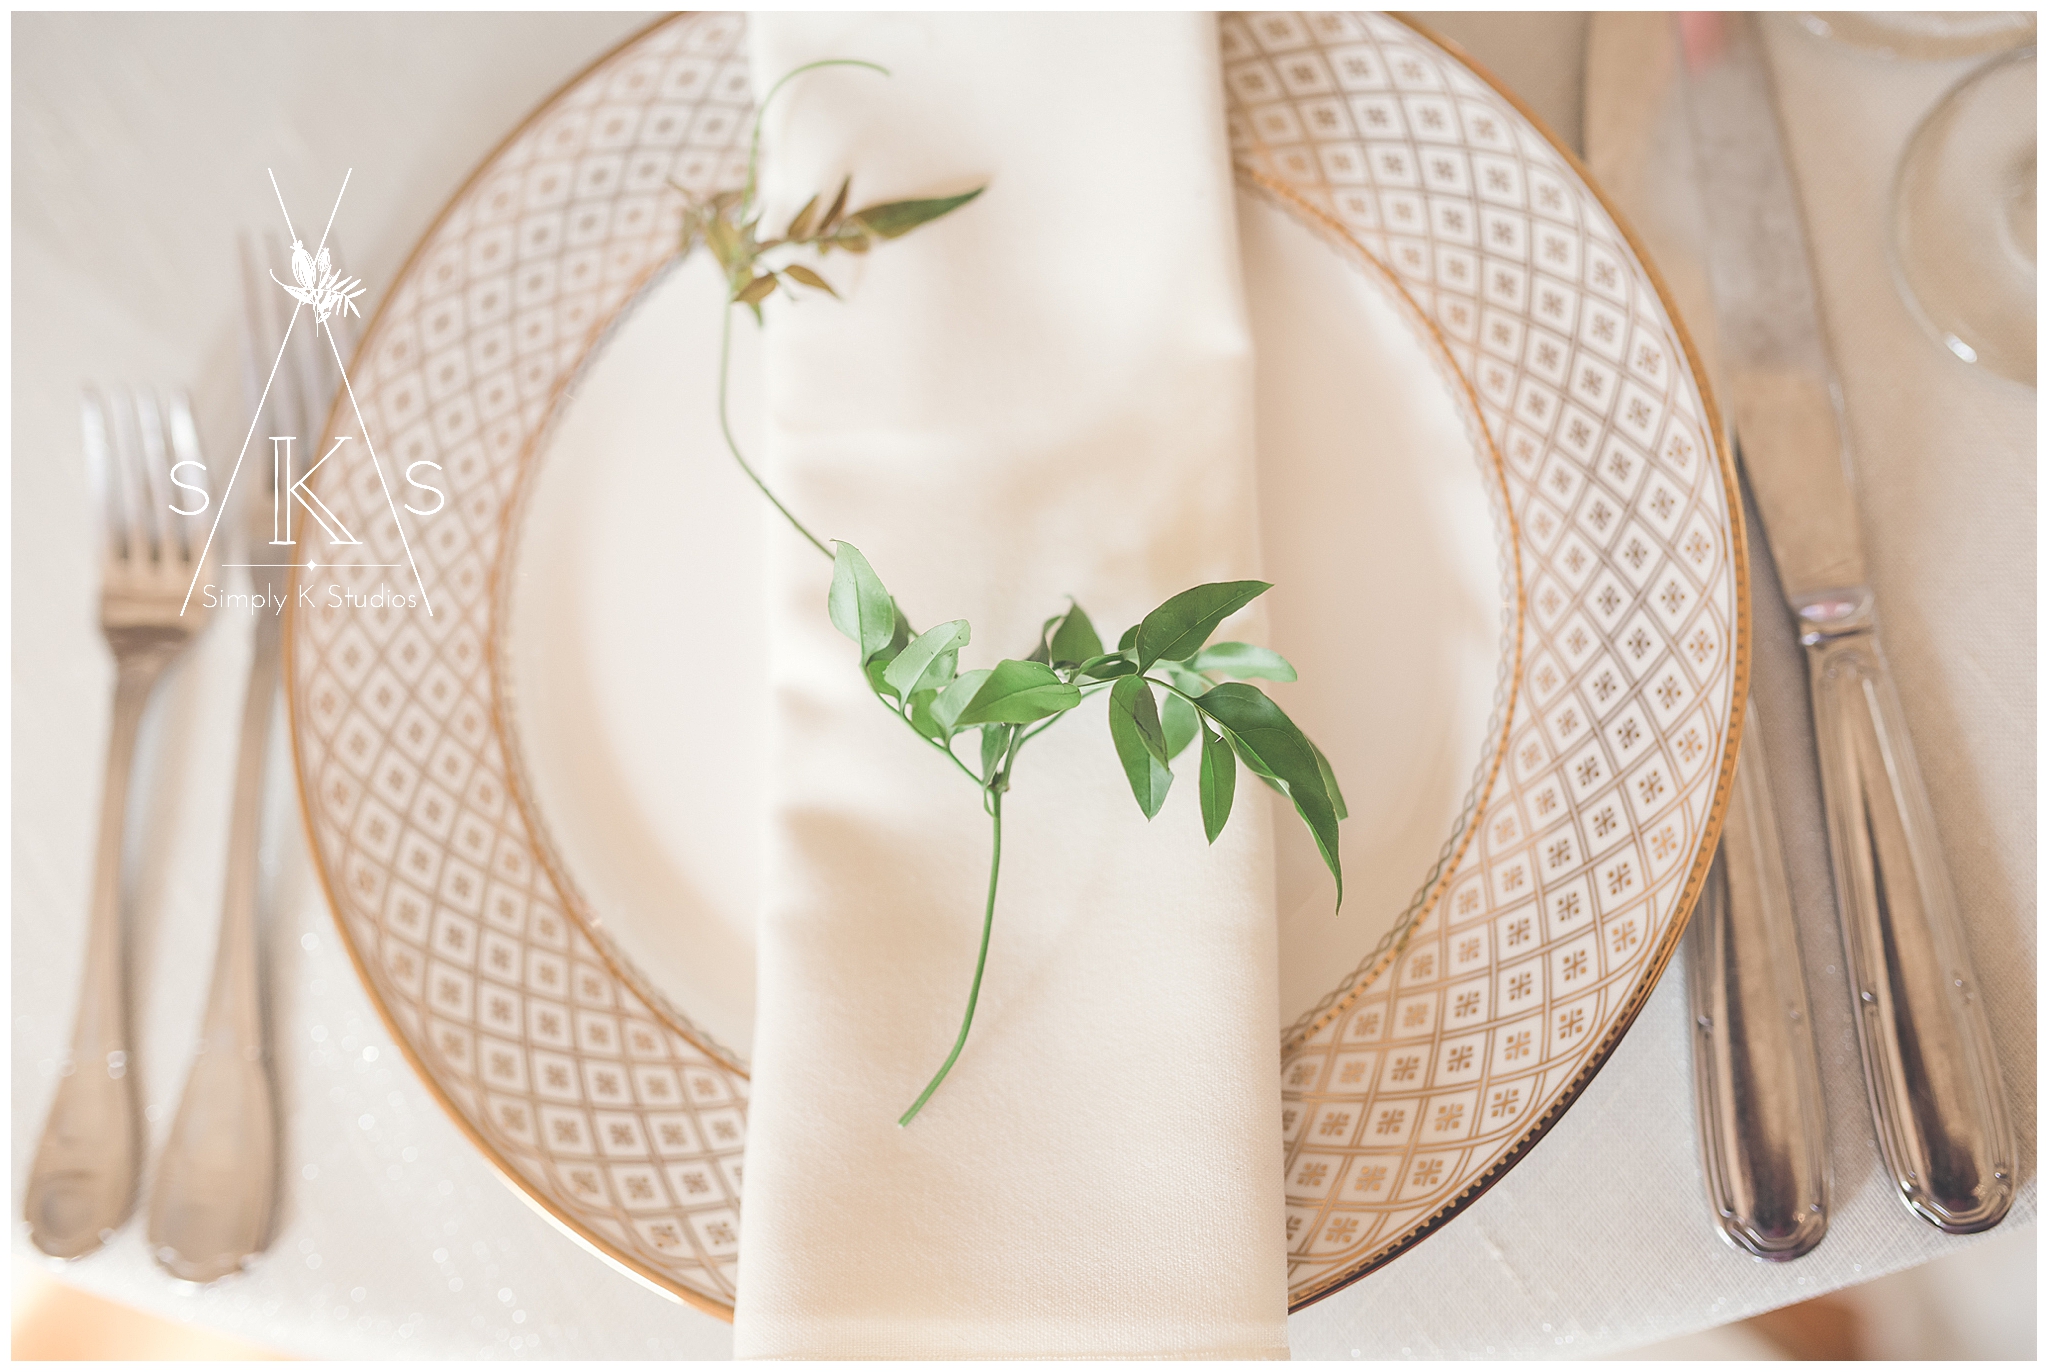 Unique floral ideas for a wedding